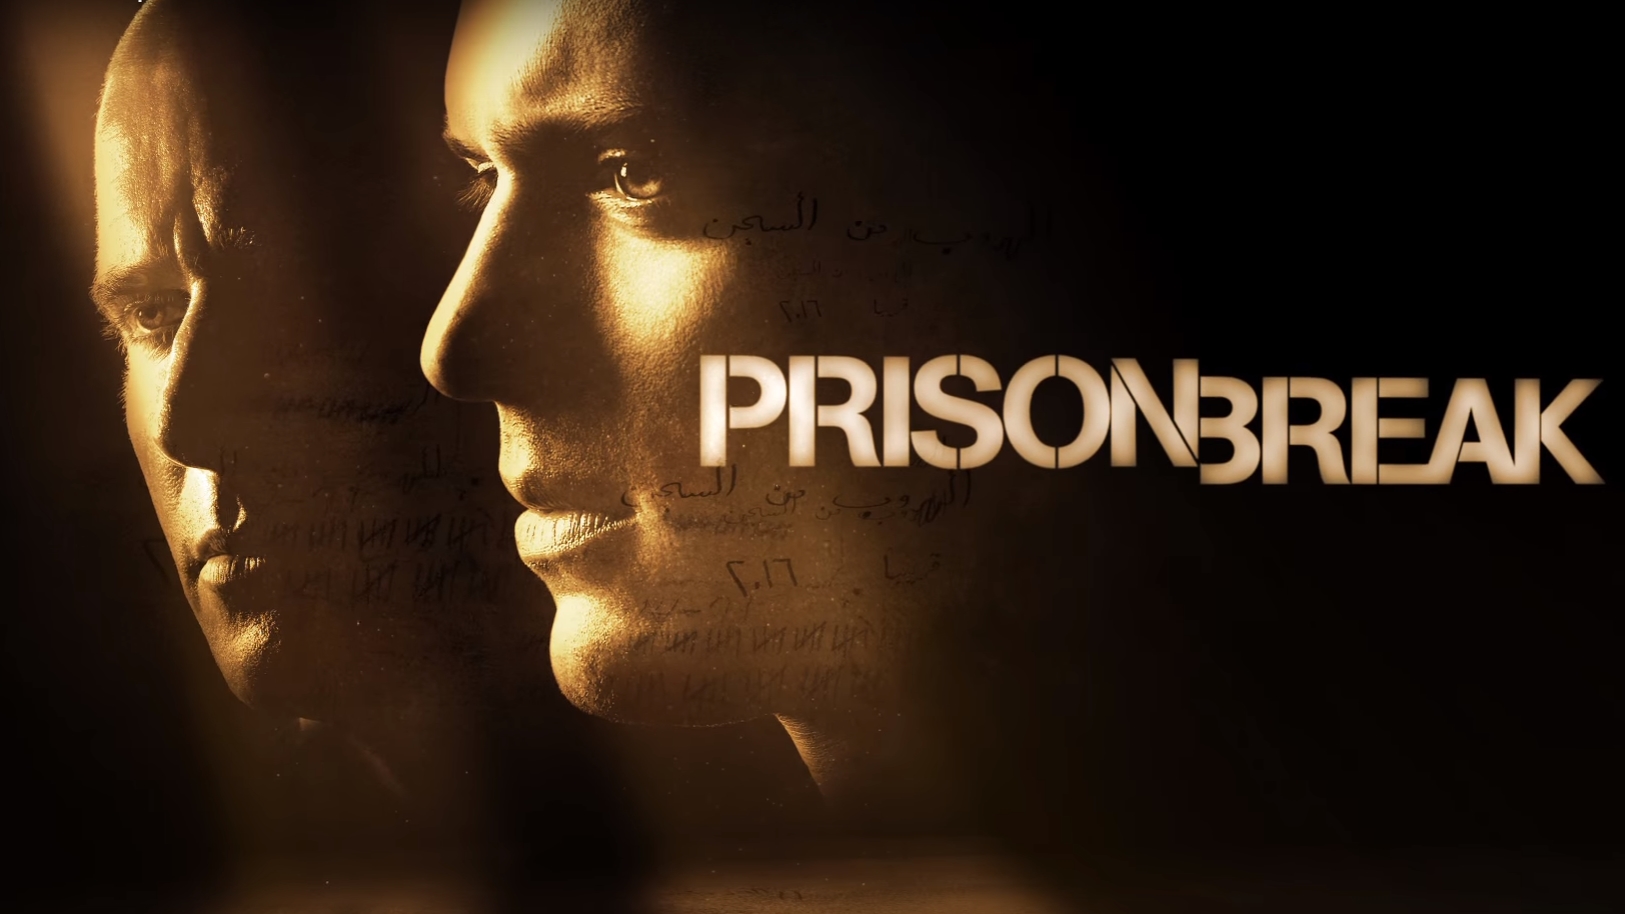 Prison Break Wallpaper Season 5 - 1625x914 Wallpaper 